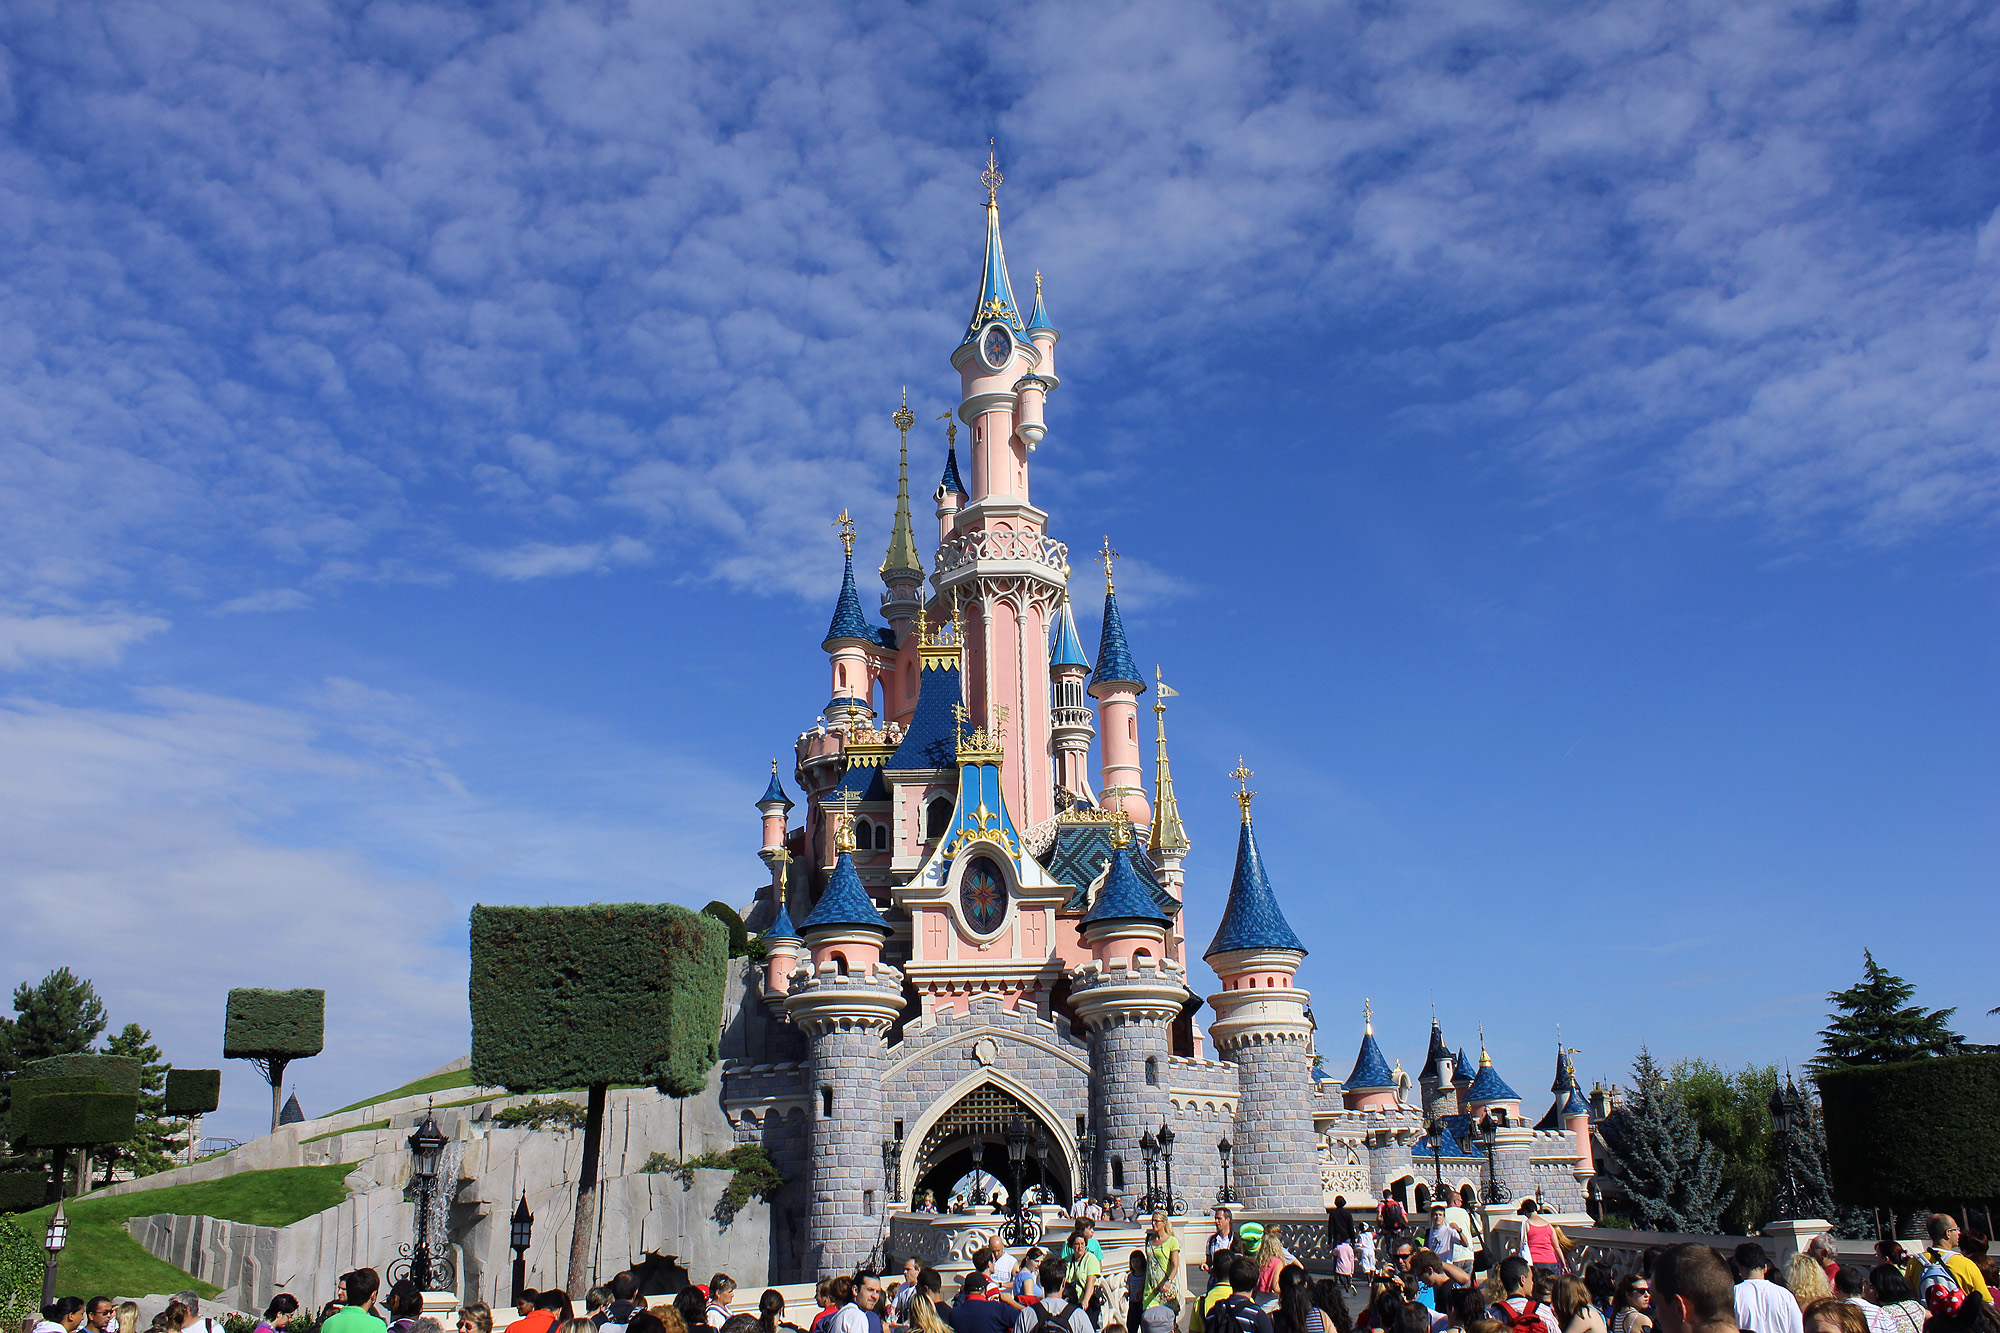 Адрес диснейленда. Диснейленд Париж Disneyland Paris. Парижский Диснейленд замок спящей красавицы. Парк Уолт Дисней в Париже. Диснейленд Париж Диснейленд парк.